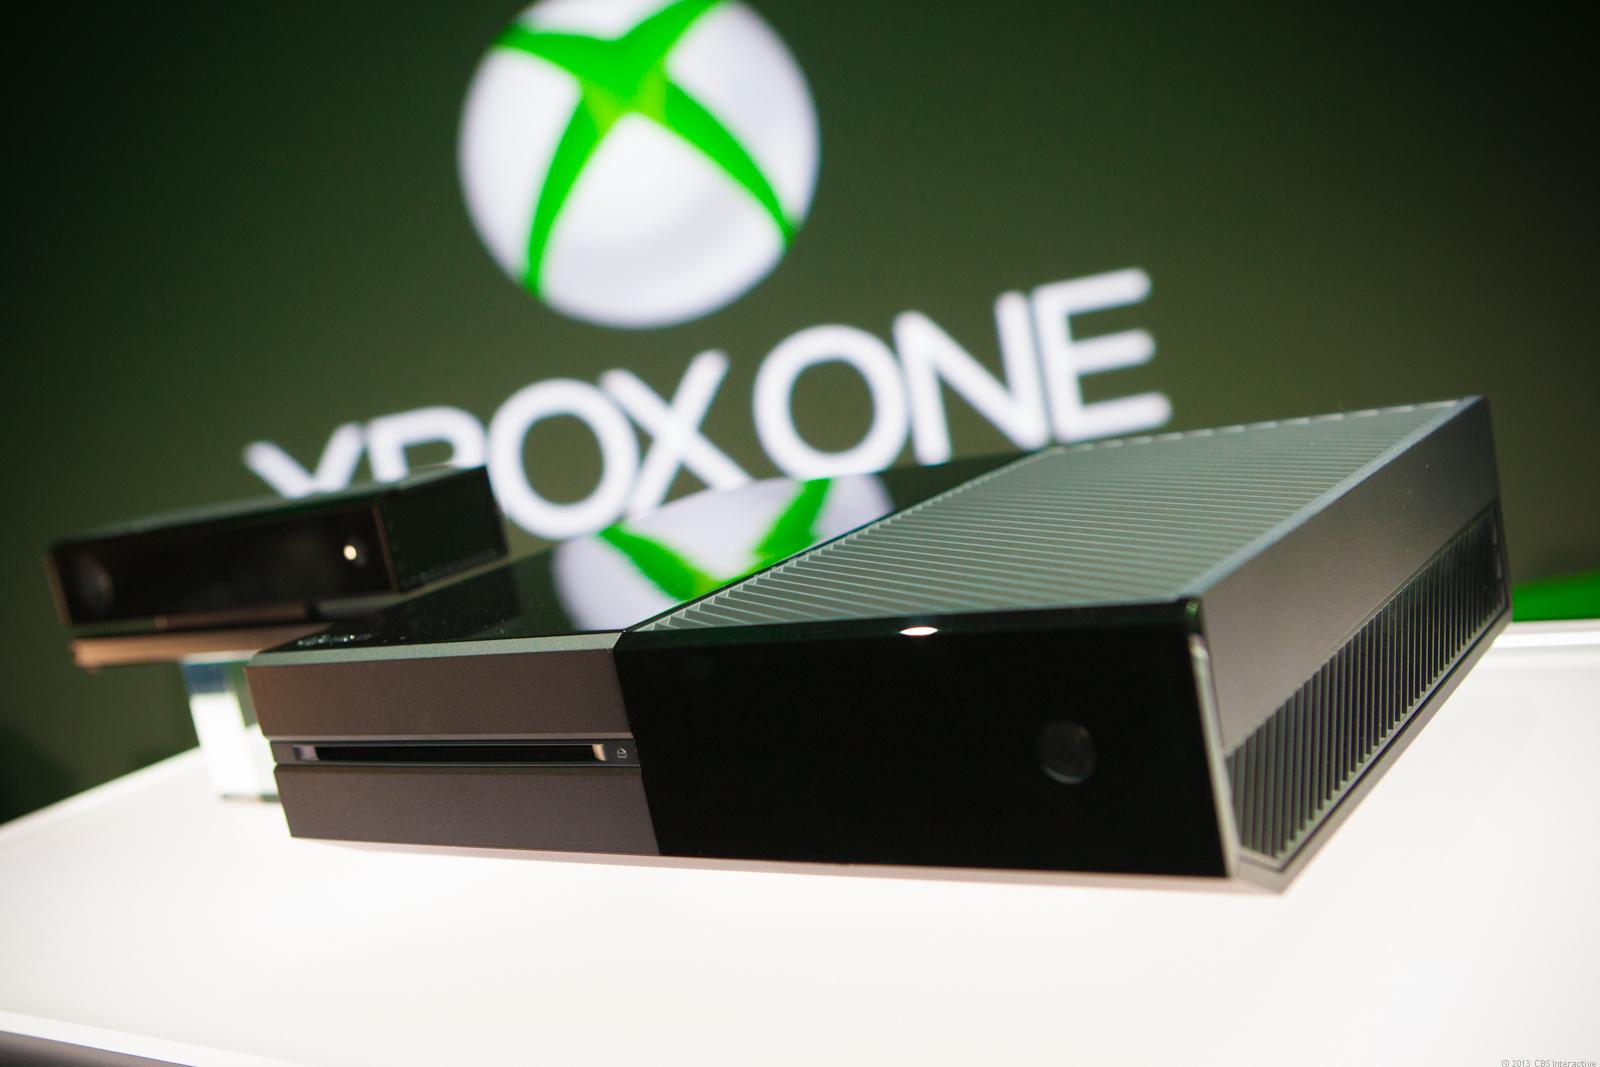 ¿El Xbox One está resguardado por tiburones?